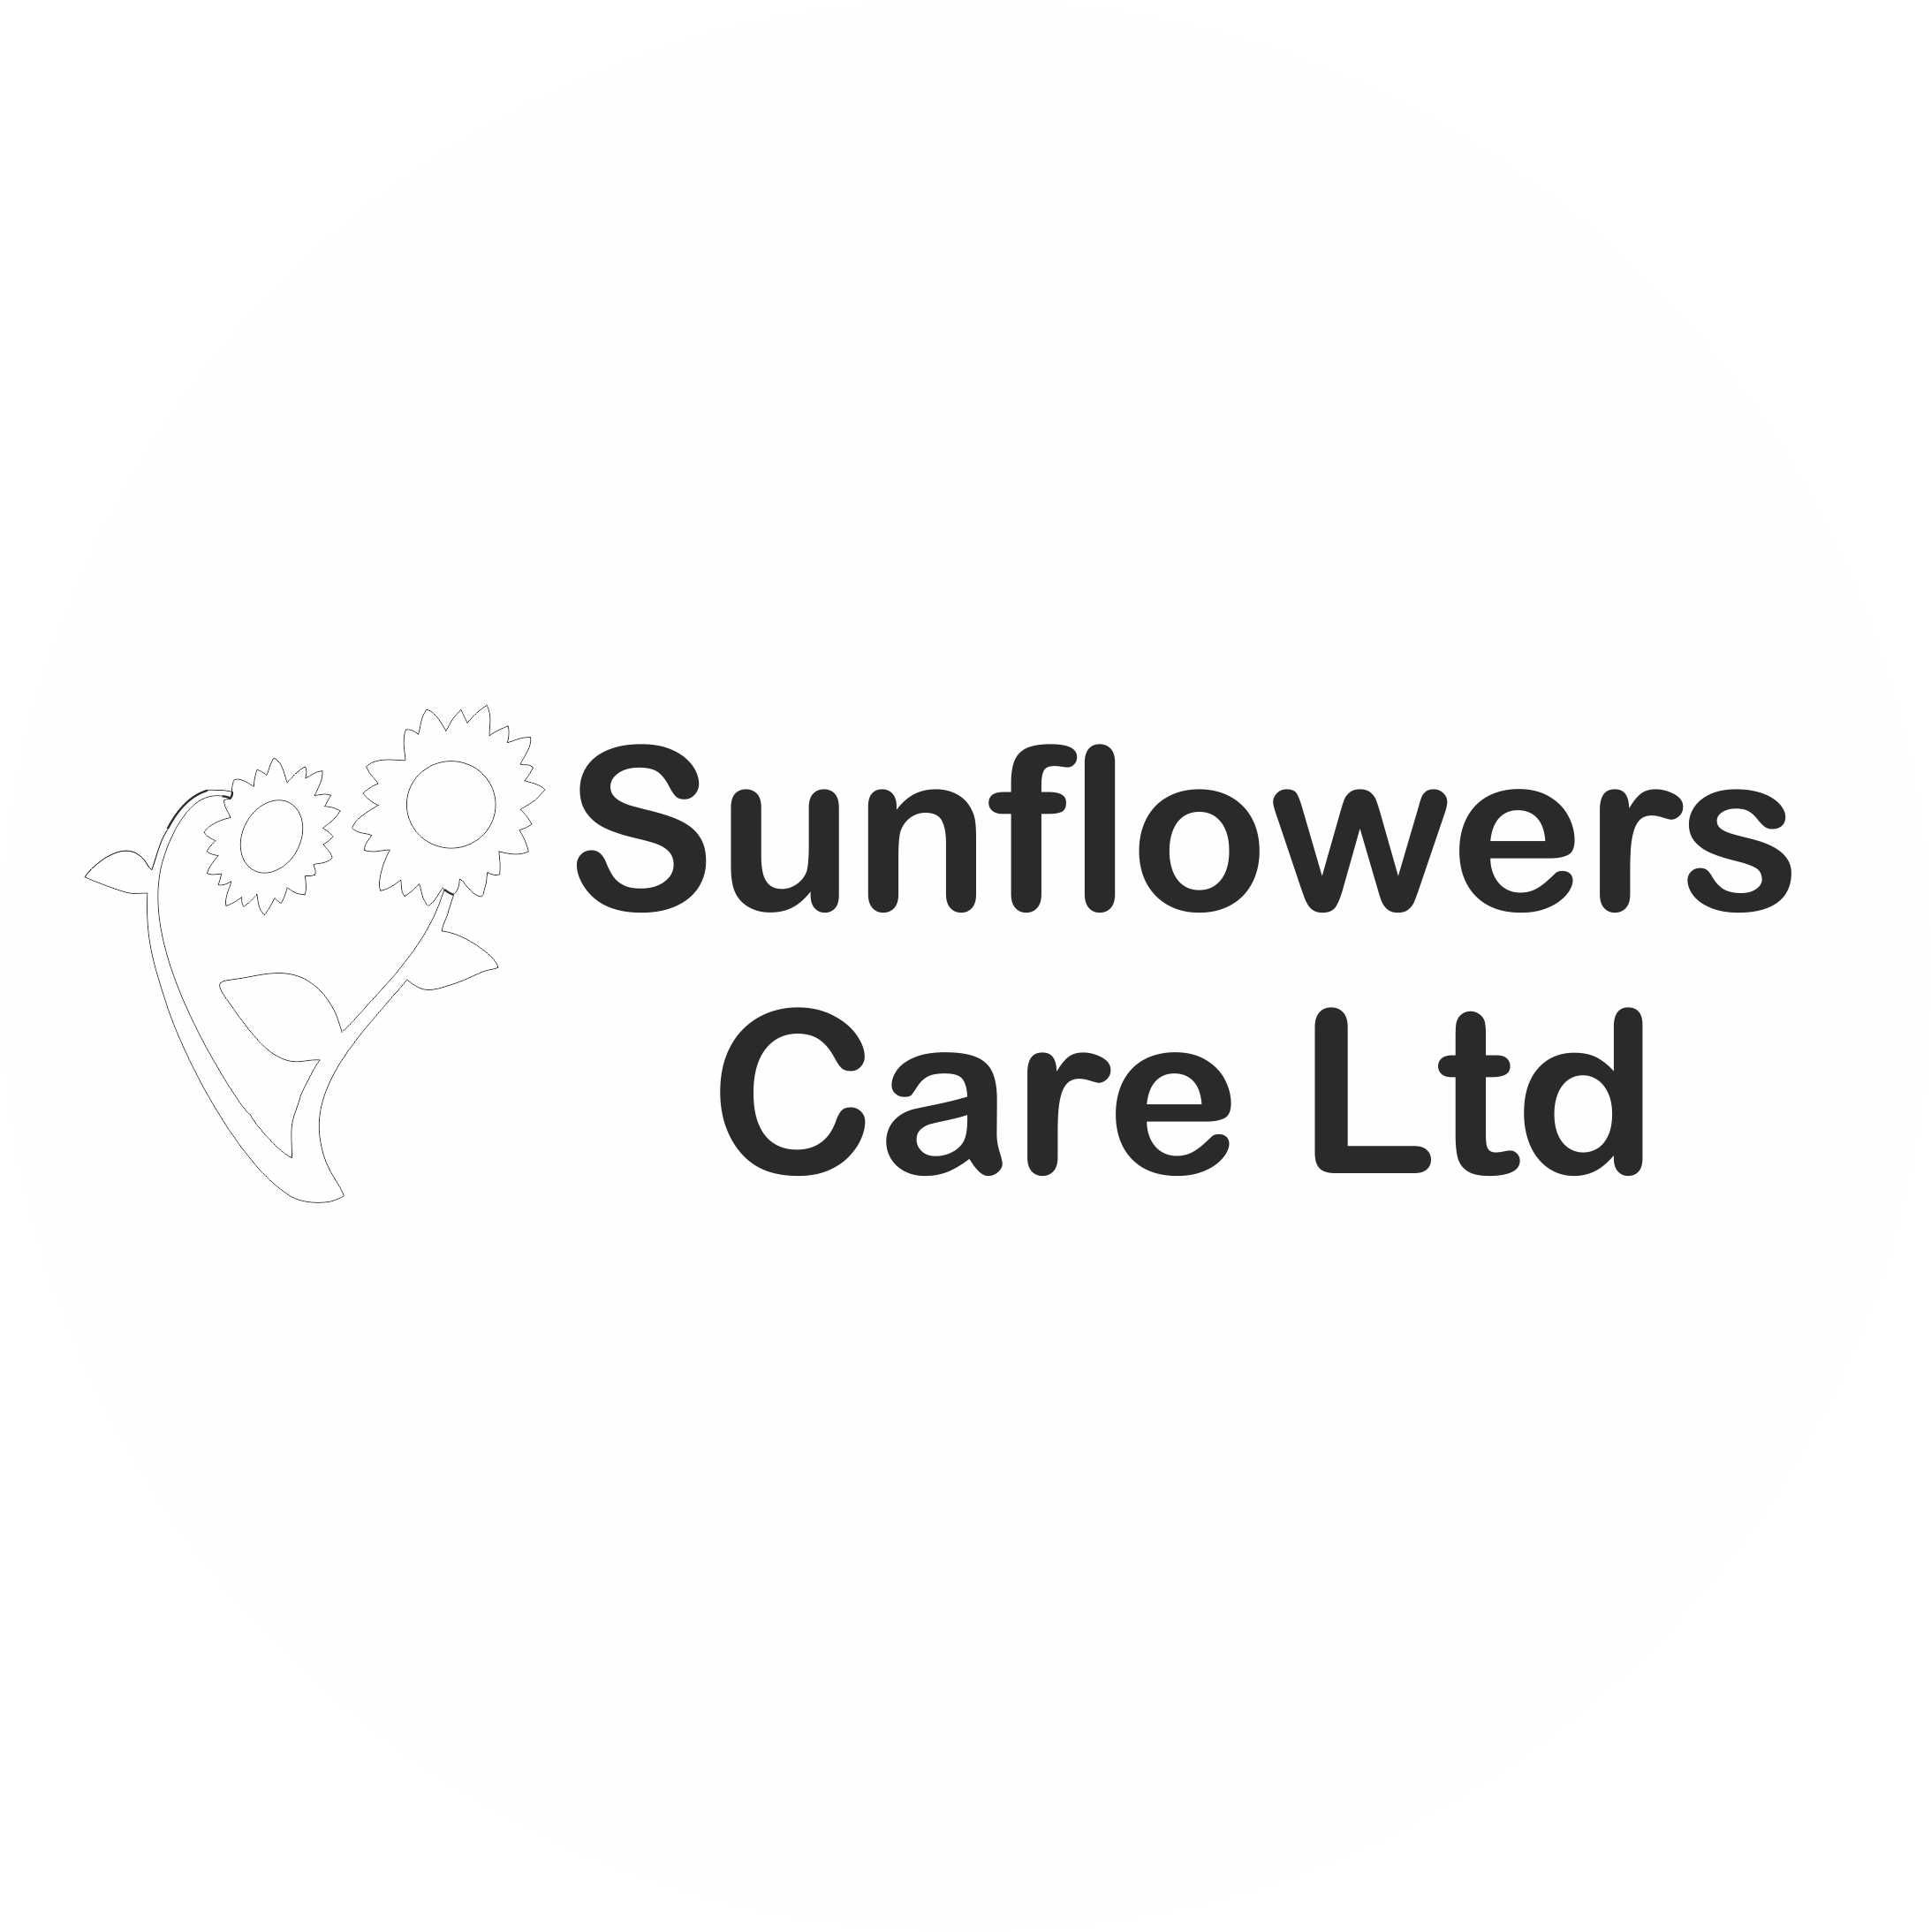 Sunflowers Care